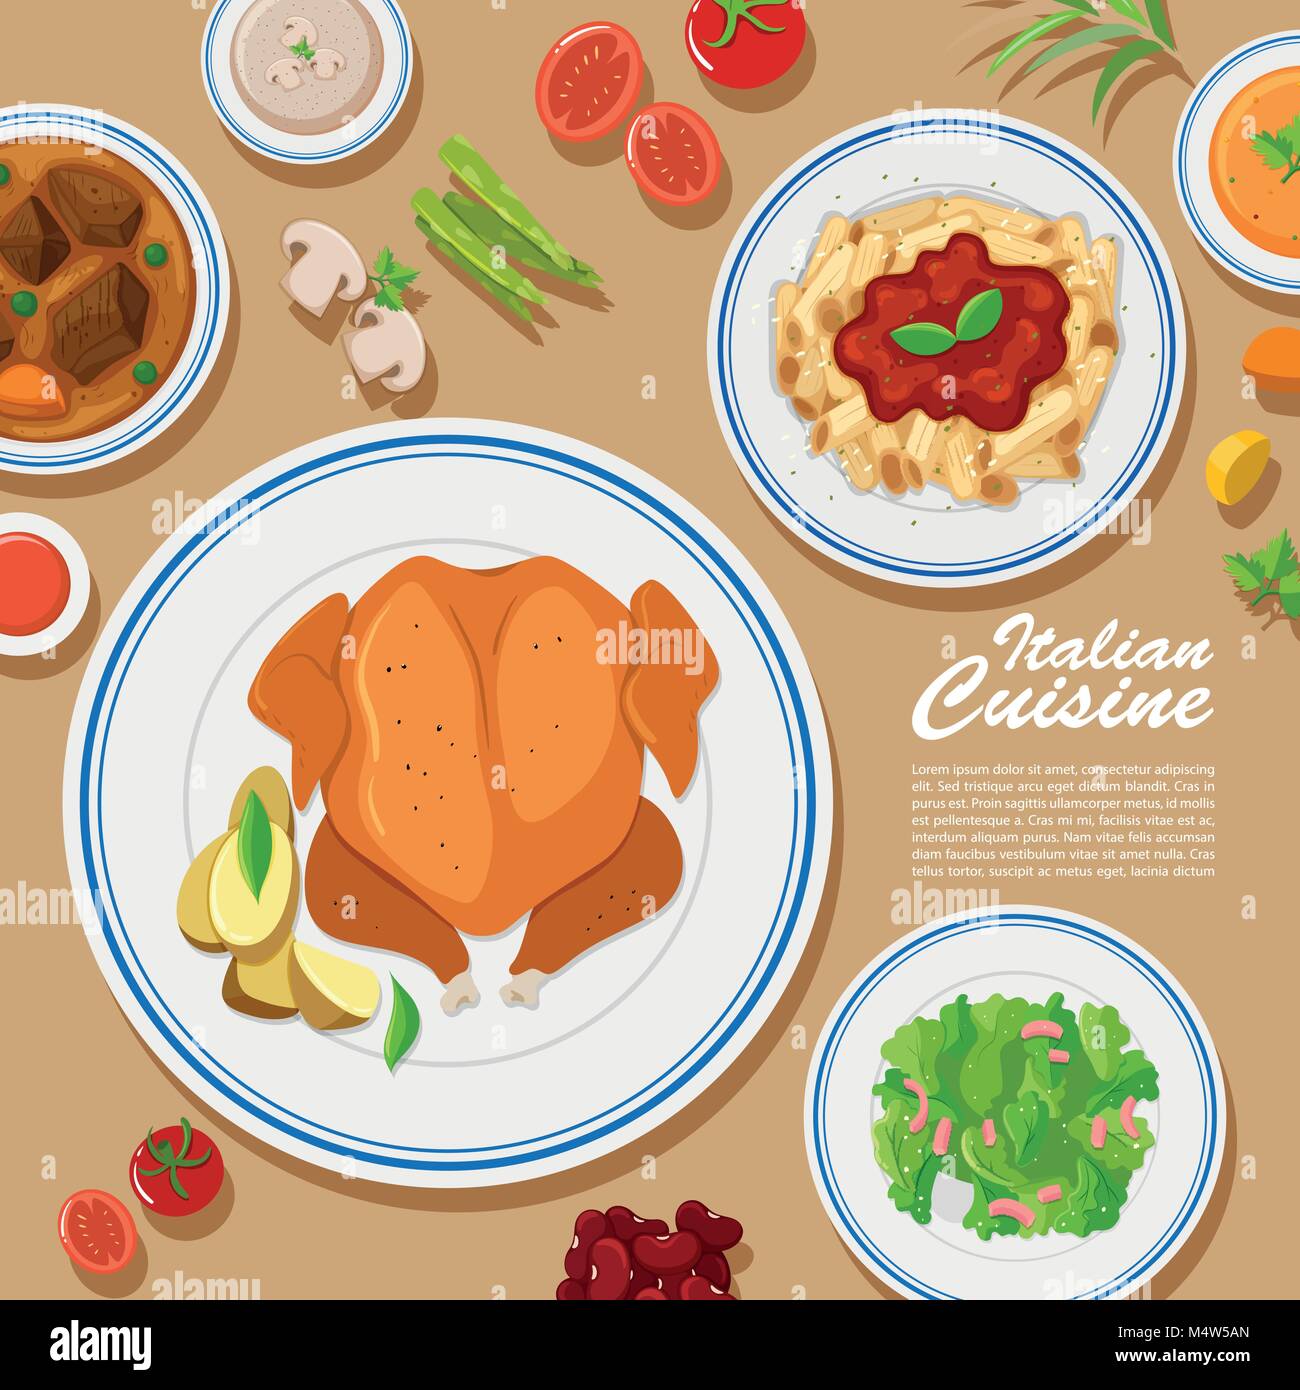 Plakat Design mit verschiedenen Arten von Lebensmitteln Abbildung Stock Vektor